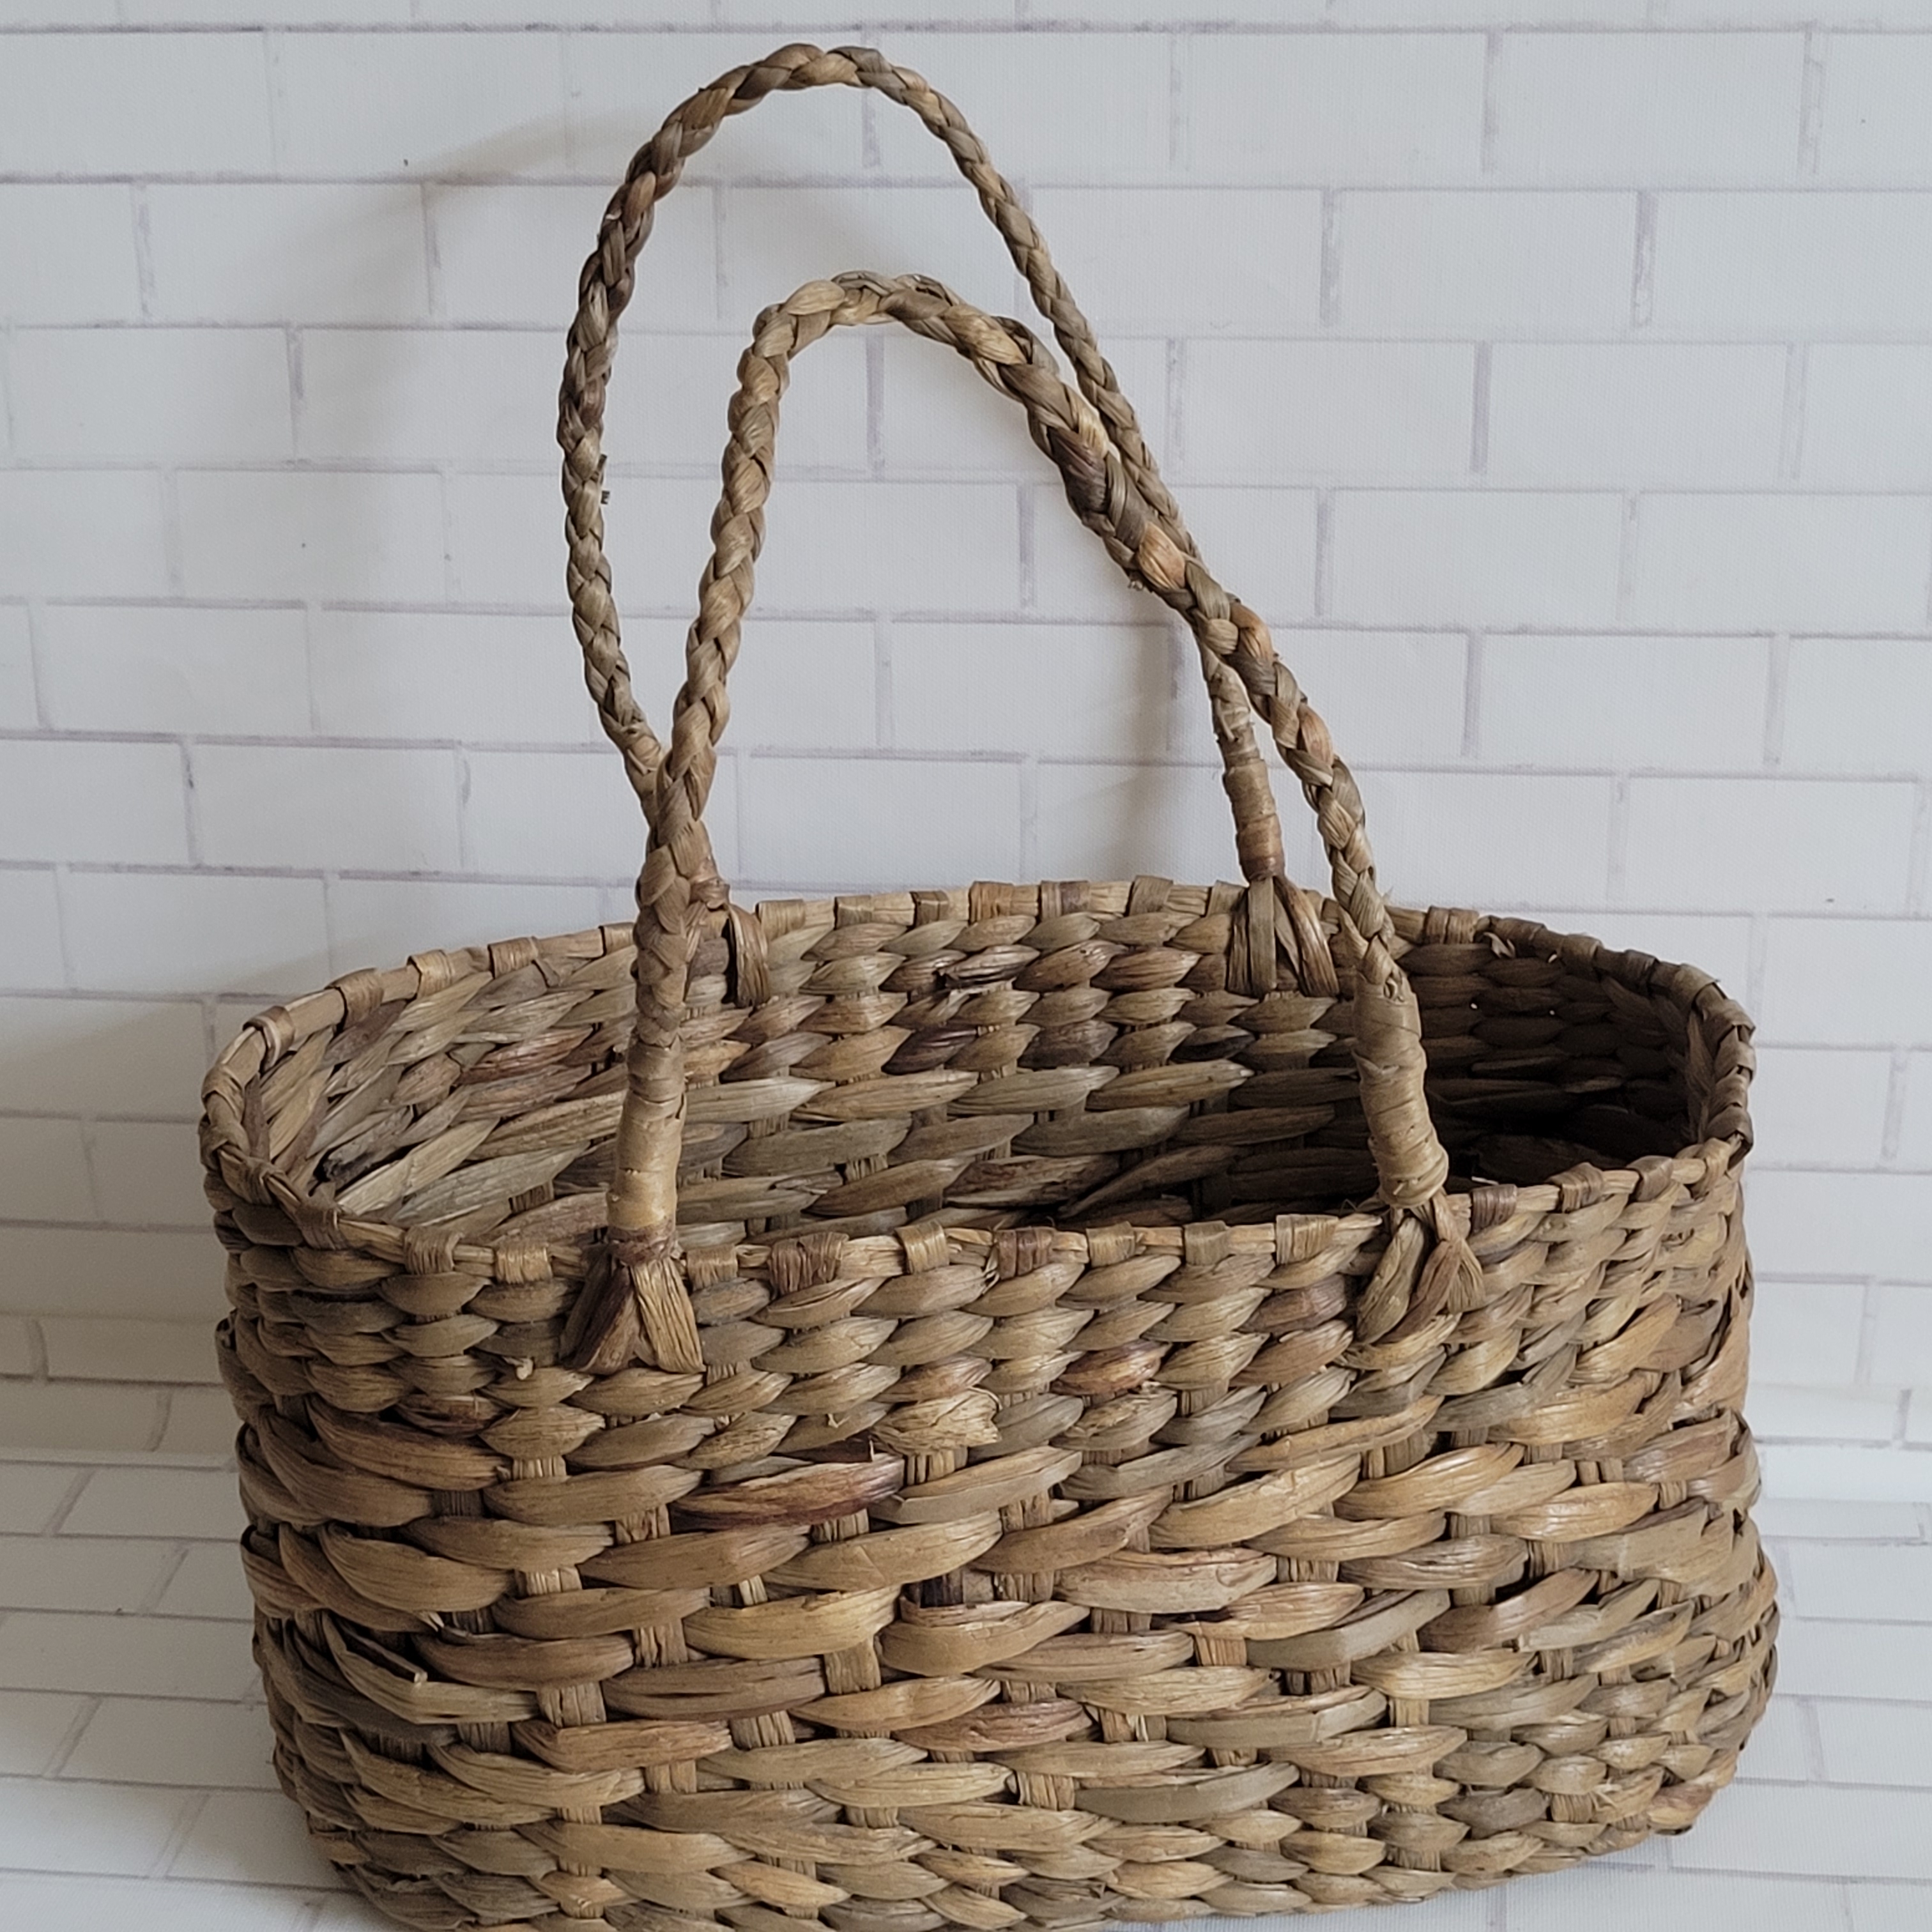 Floral art | Cane Oval Hamper Basket with Handle  undefined